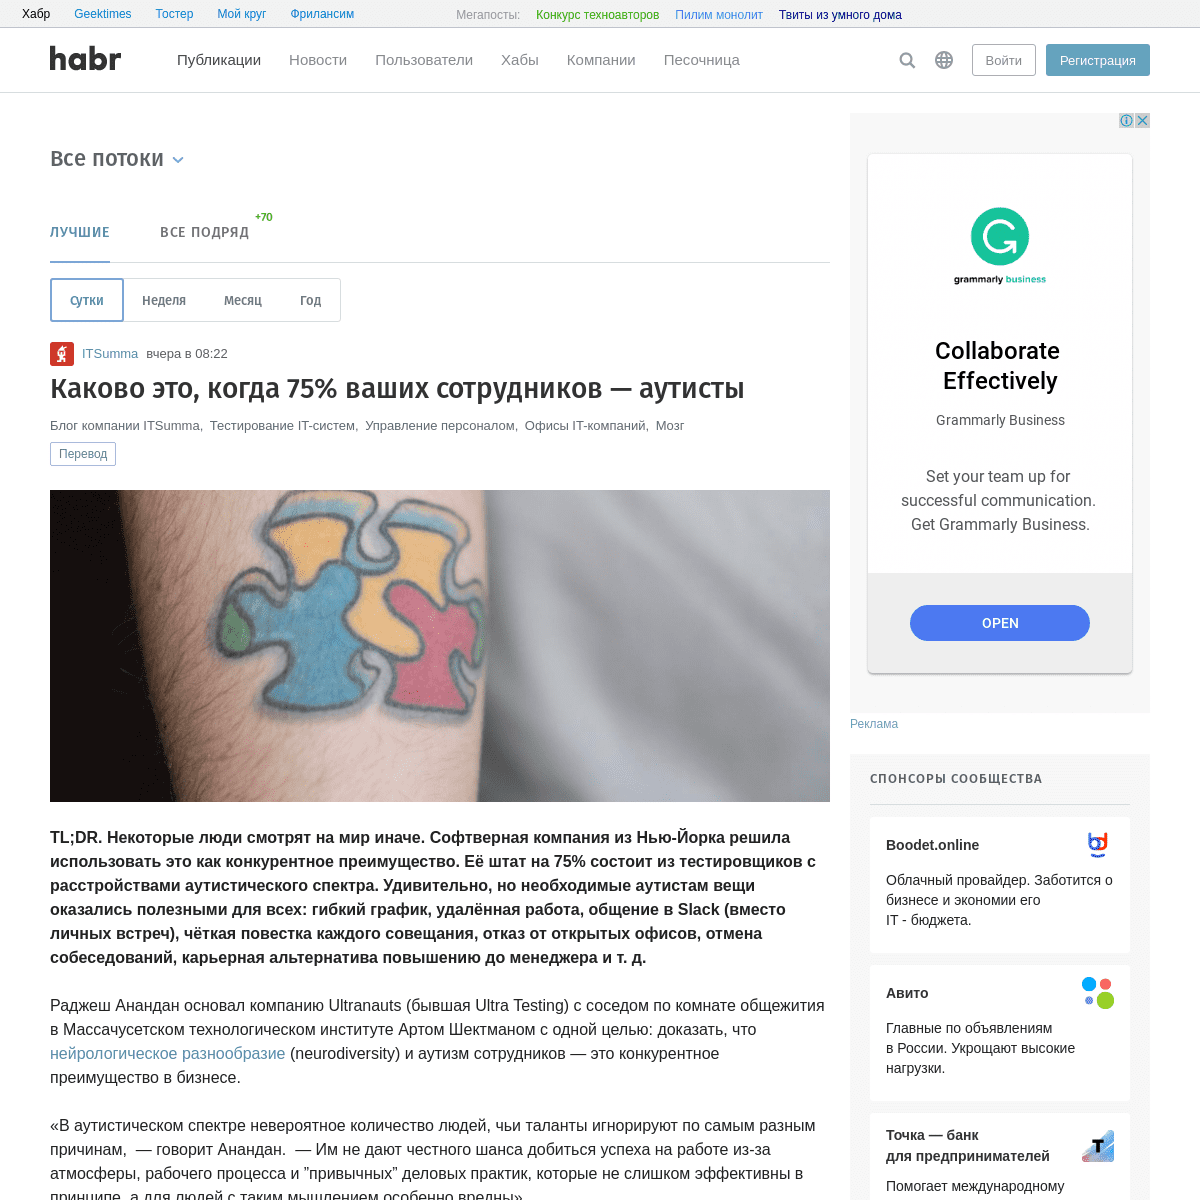 A complete backup of habr.com